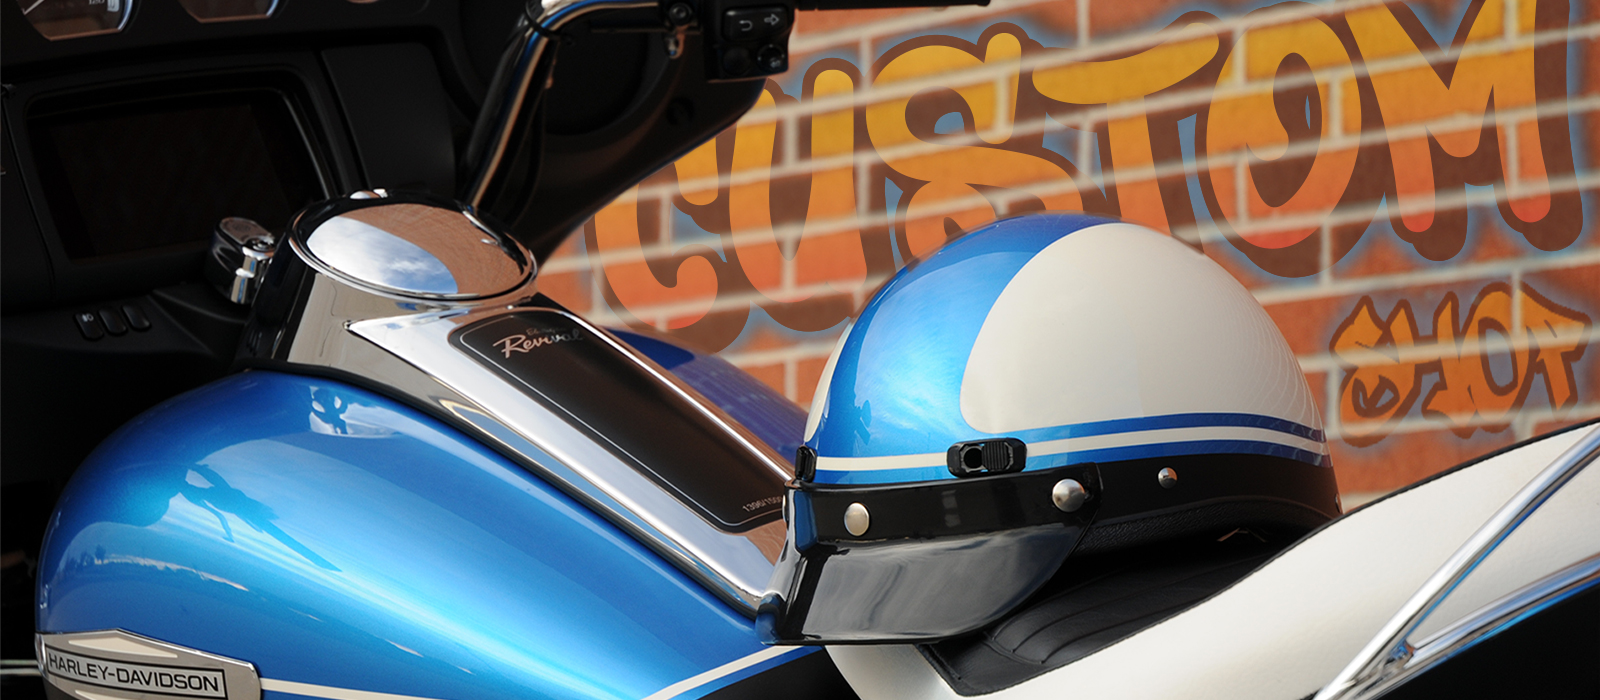 Super Seer Custom Motorcycle Helmets - Made in America